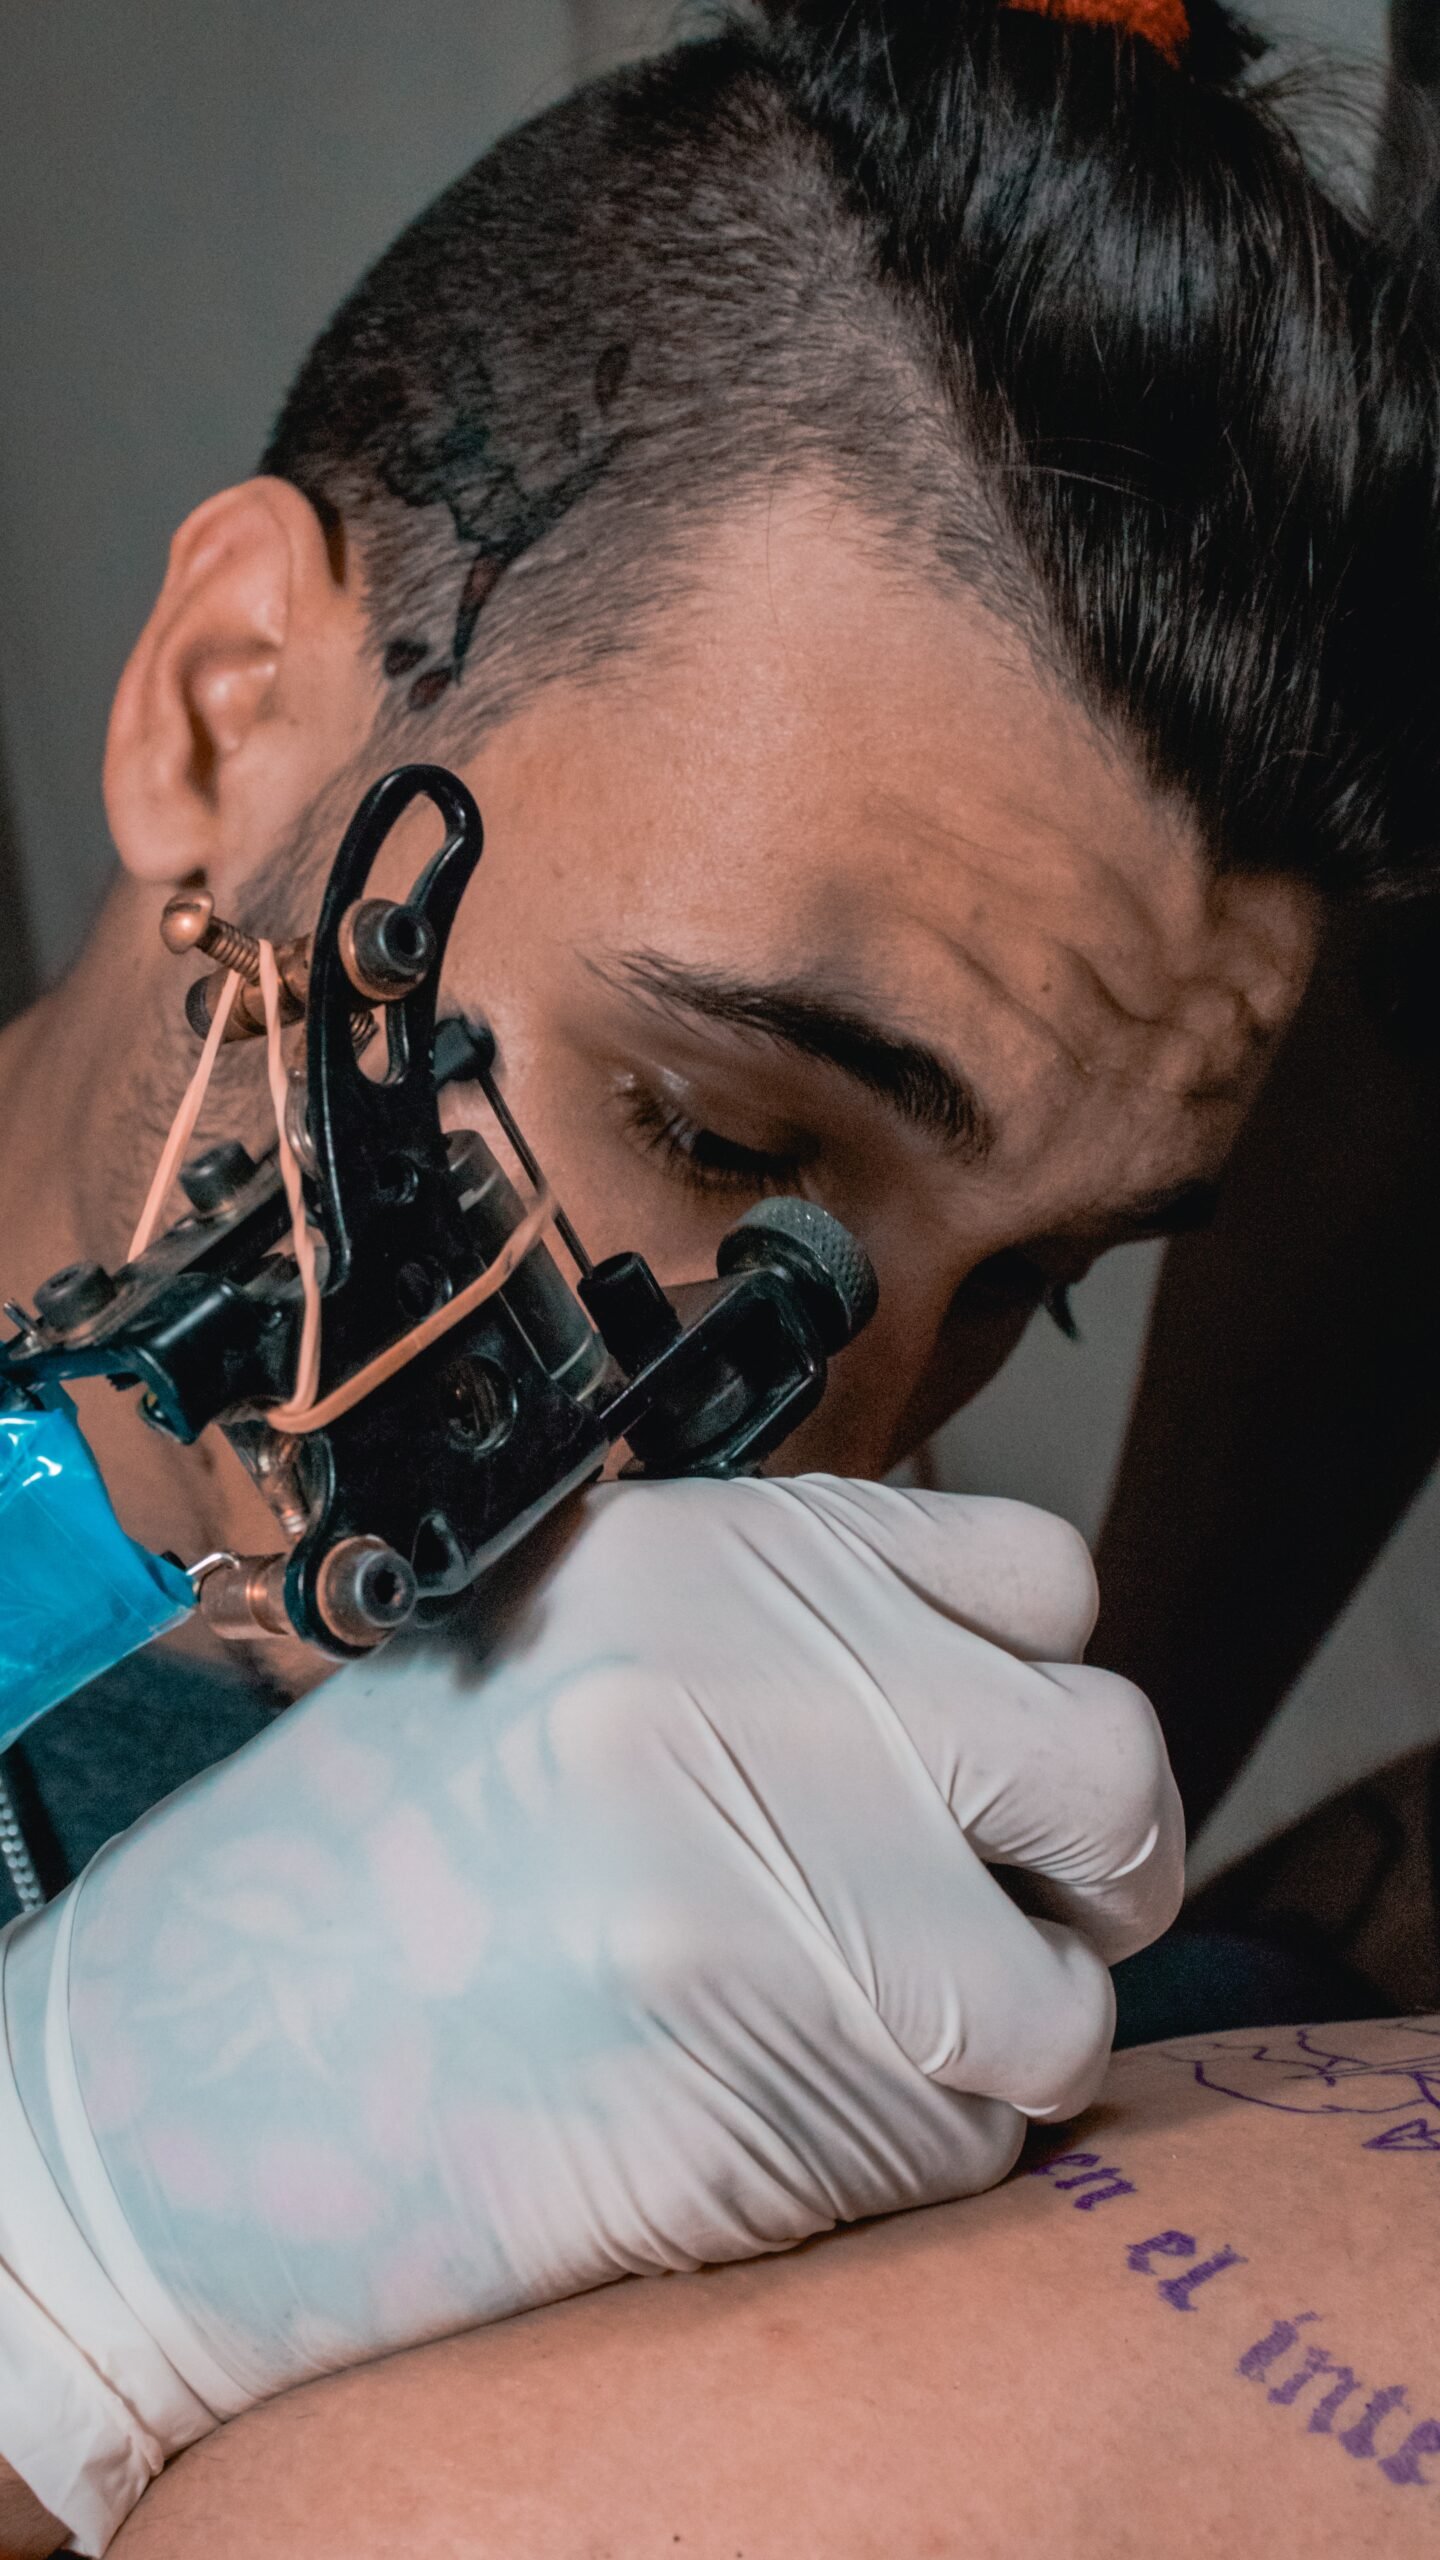 Los beneficios y riesgos de los tatuajes